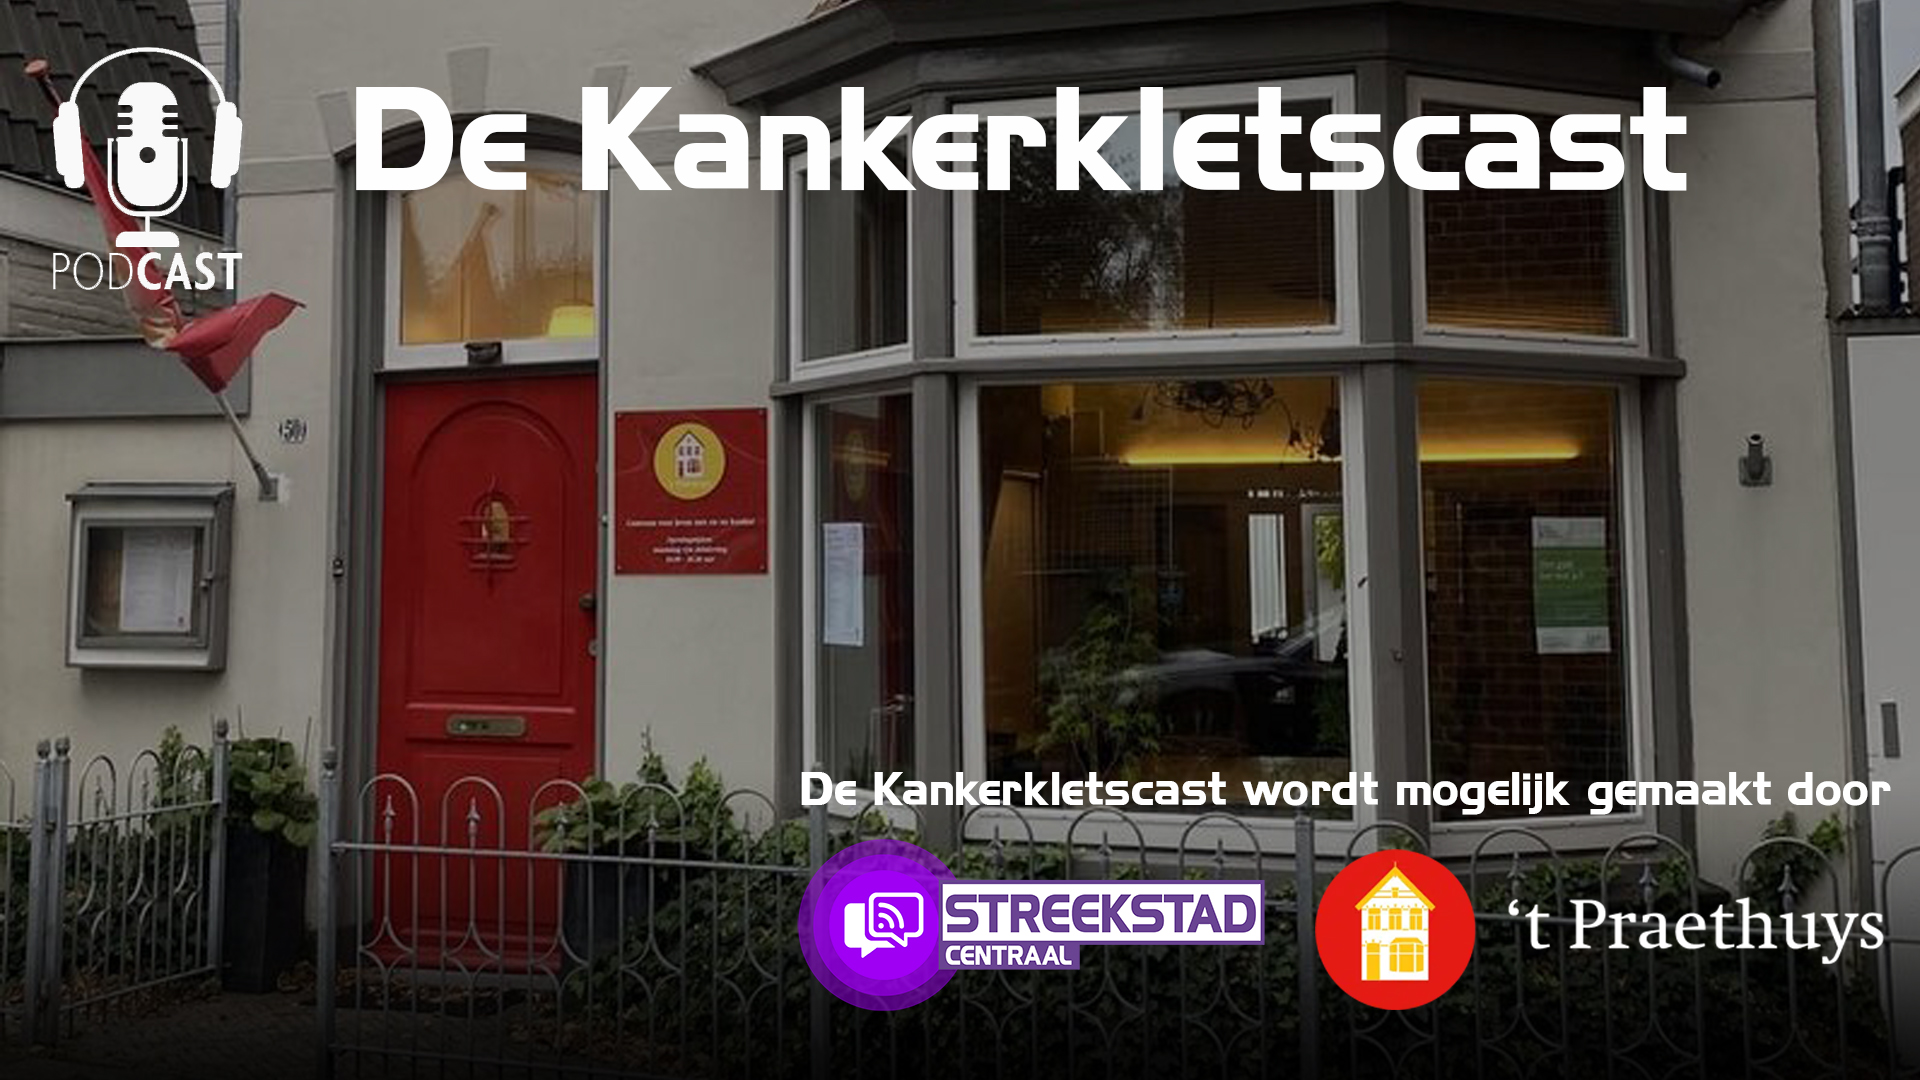 Arie Groot aan het woord in De Kankerkletscast (S01A01)